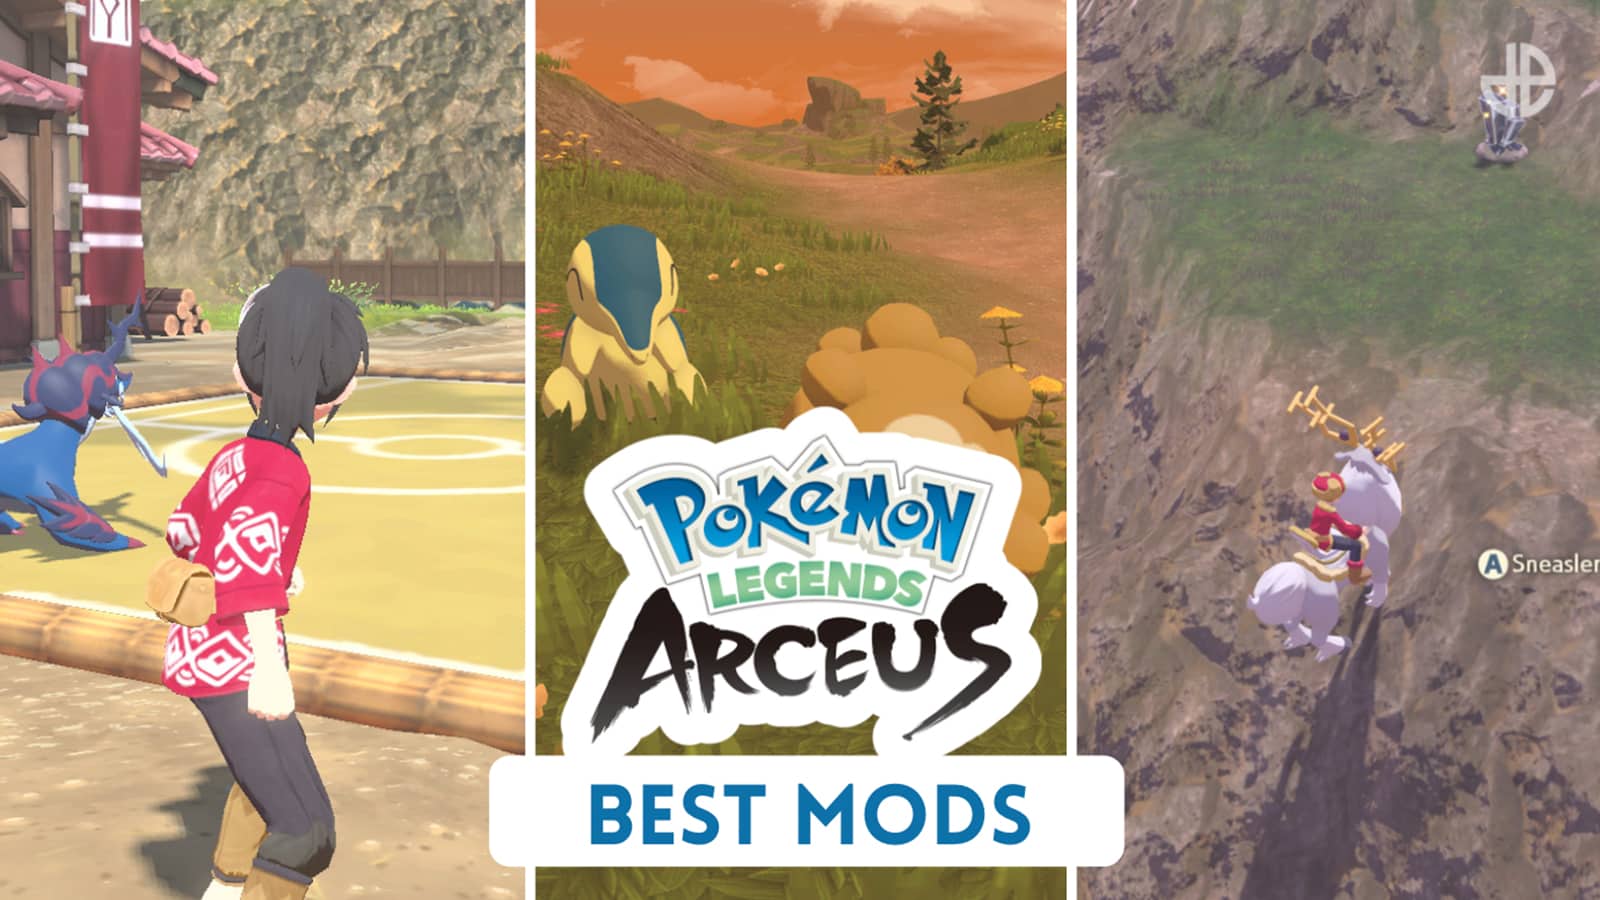 Using Mods To RUIN Pokémon Legends Arceus 